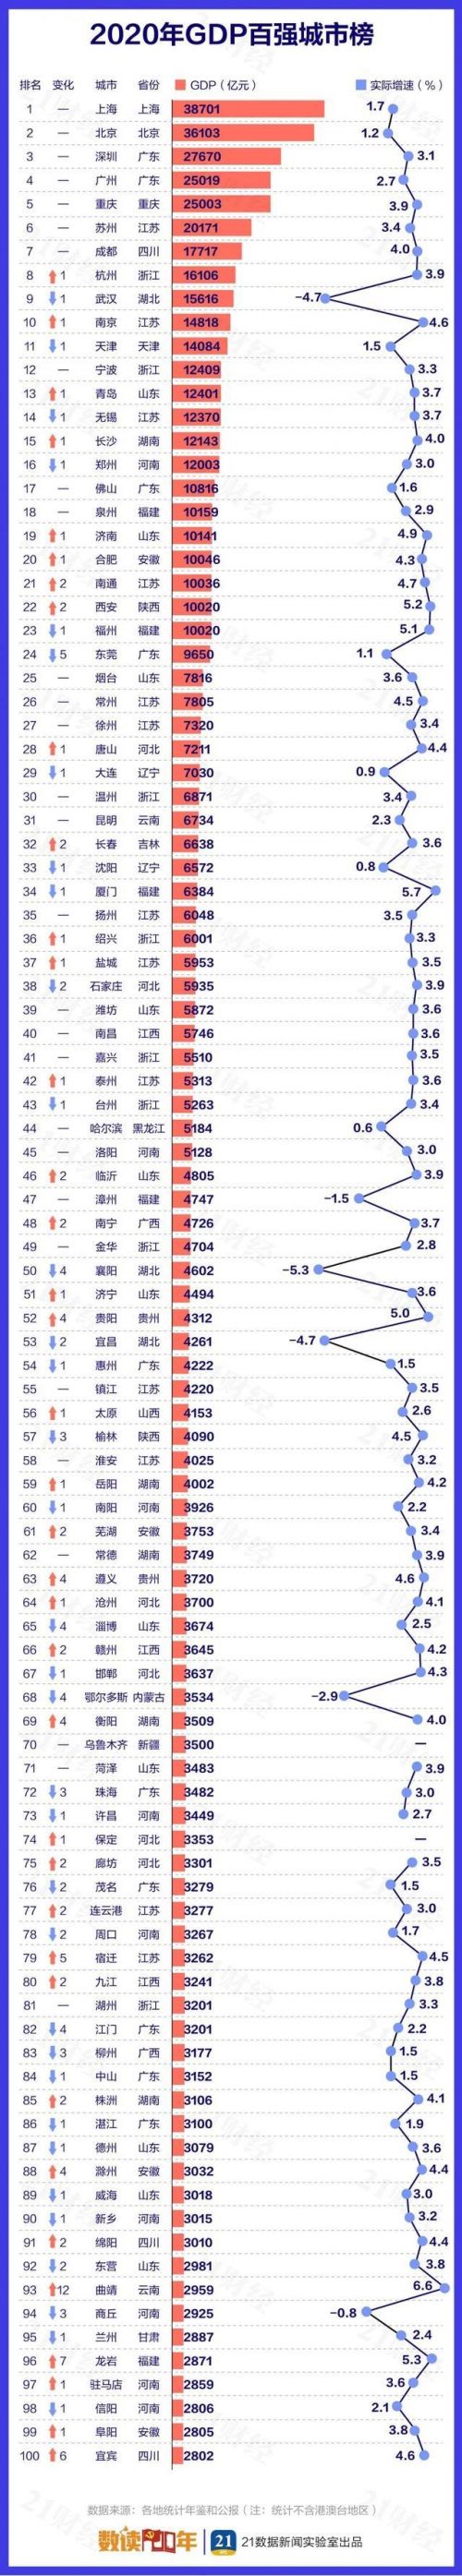 2020中国城市GDP百强榜完整榜单公布 2020中国城市GDP百强榜一览